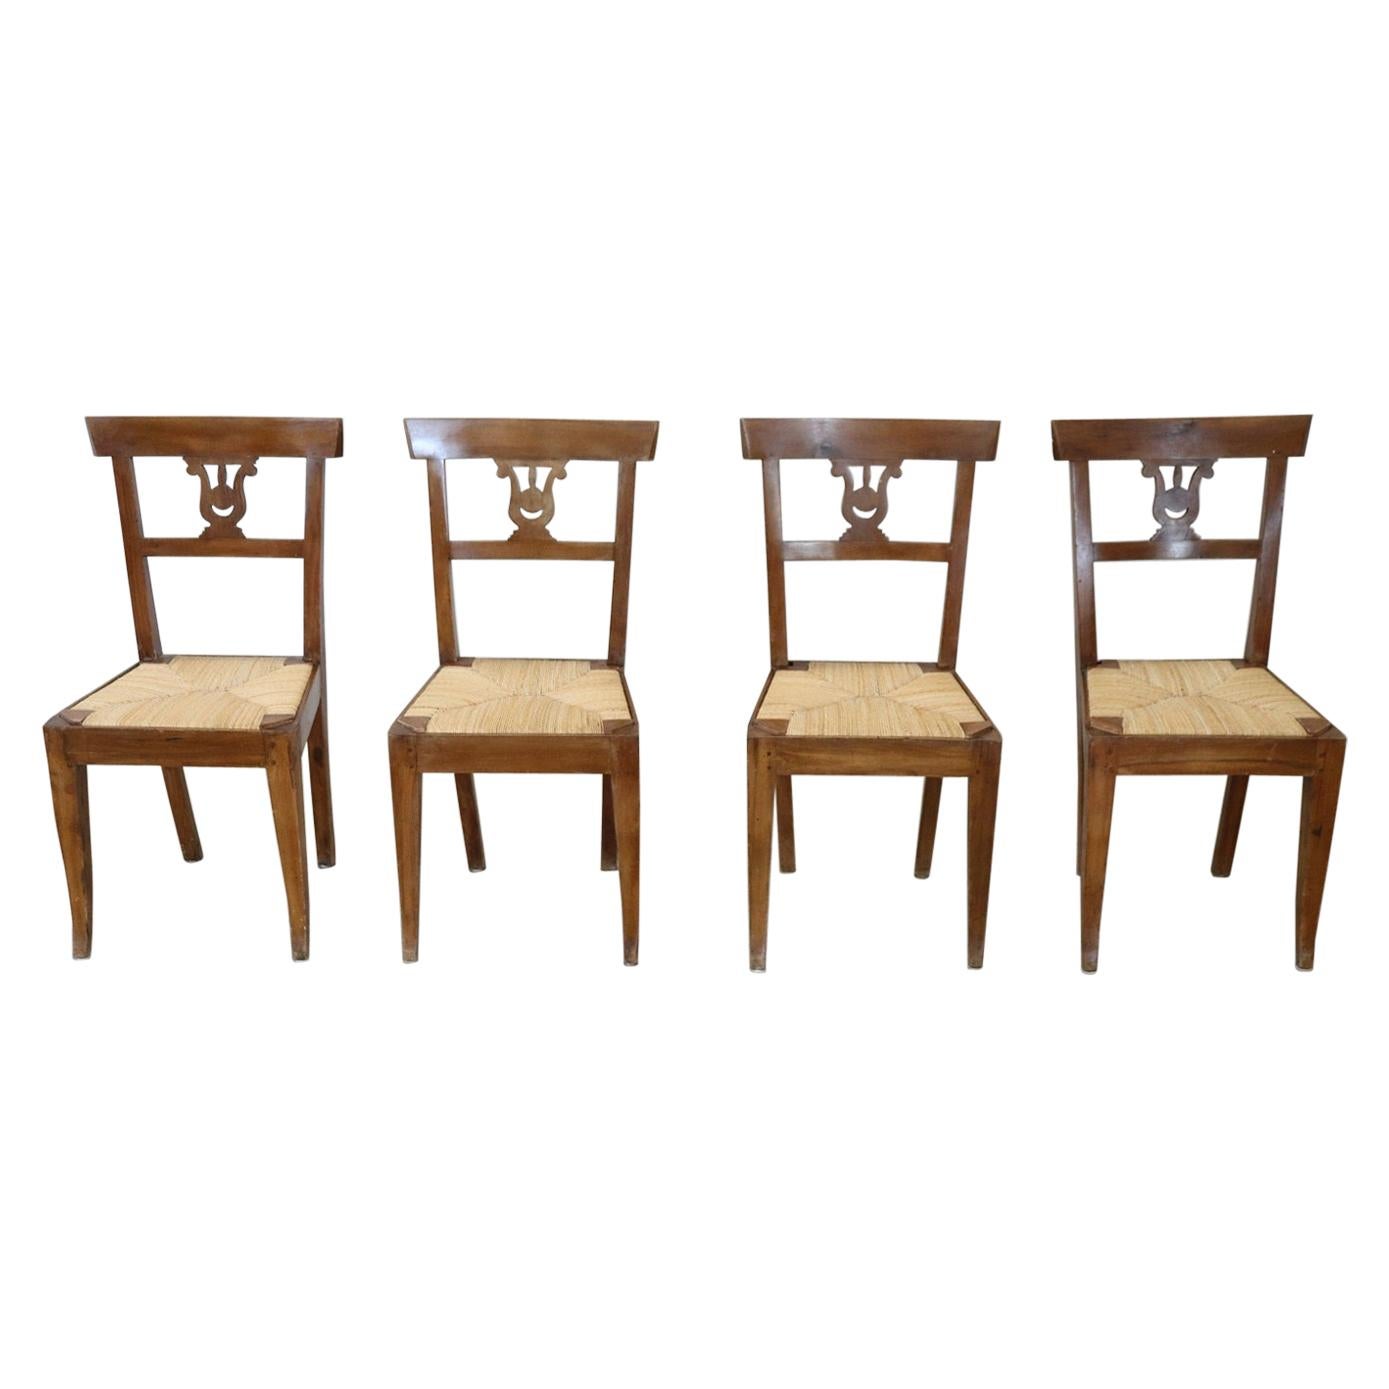 Quatre chaises anciennes en bois de noyer sculpté de style Empire italien du début du XIXe siècle